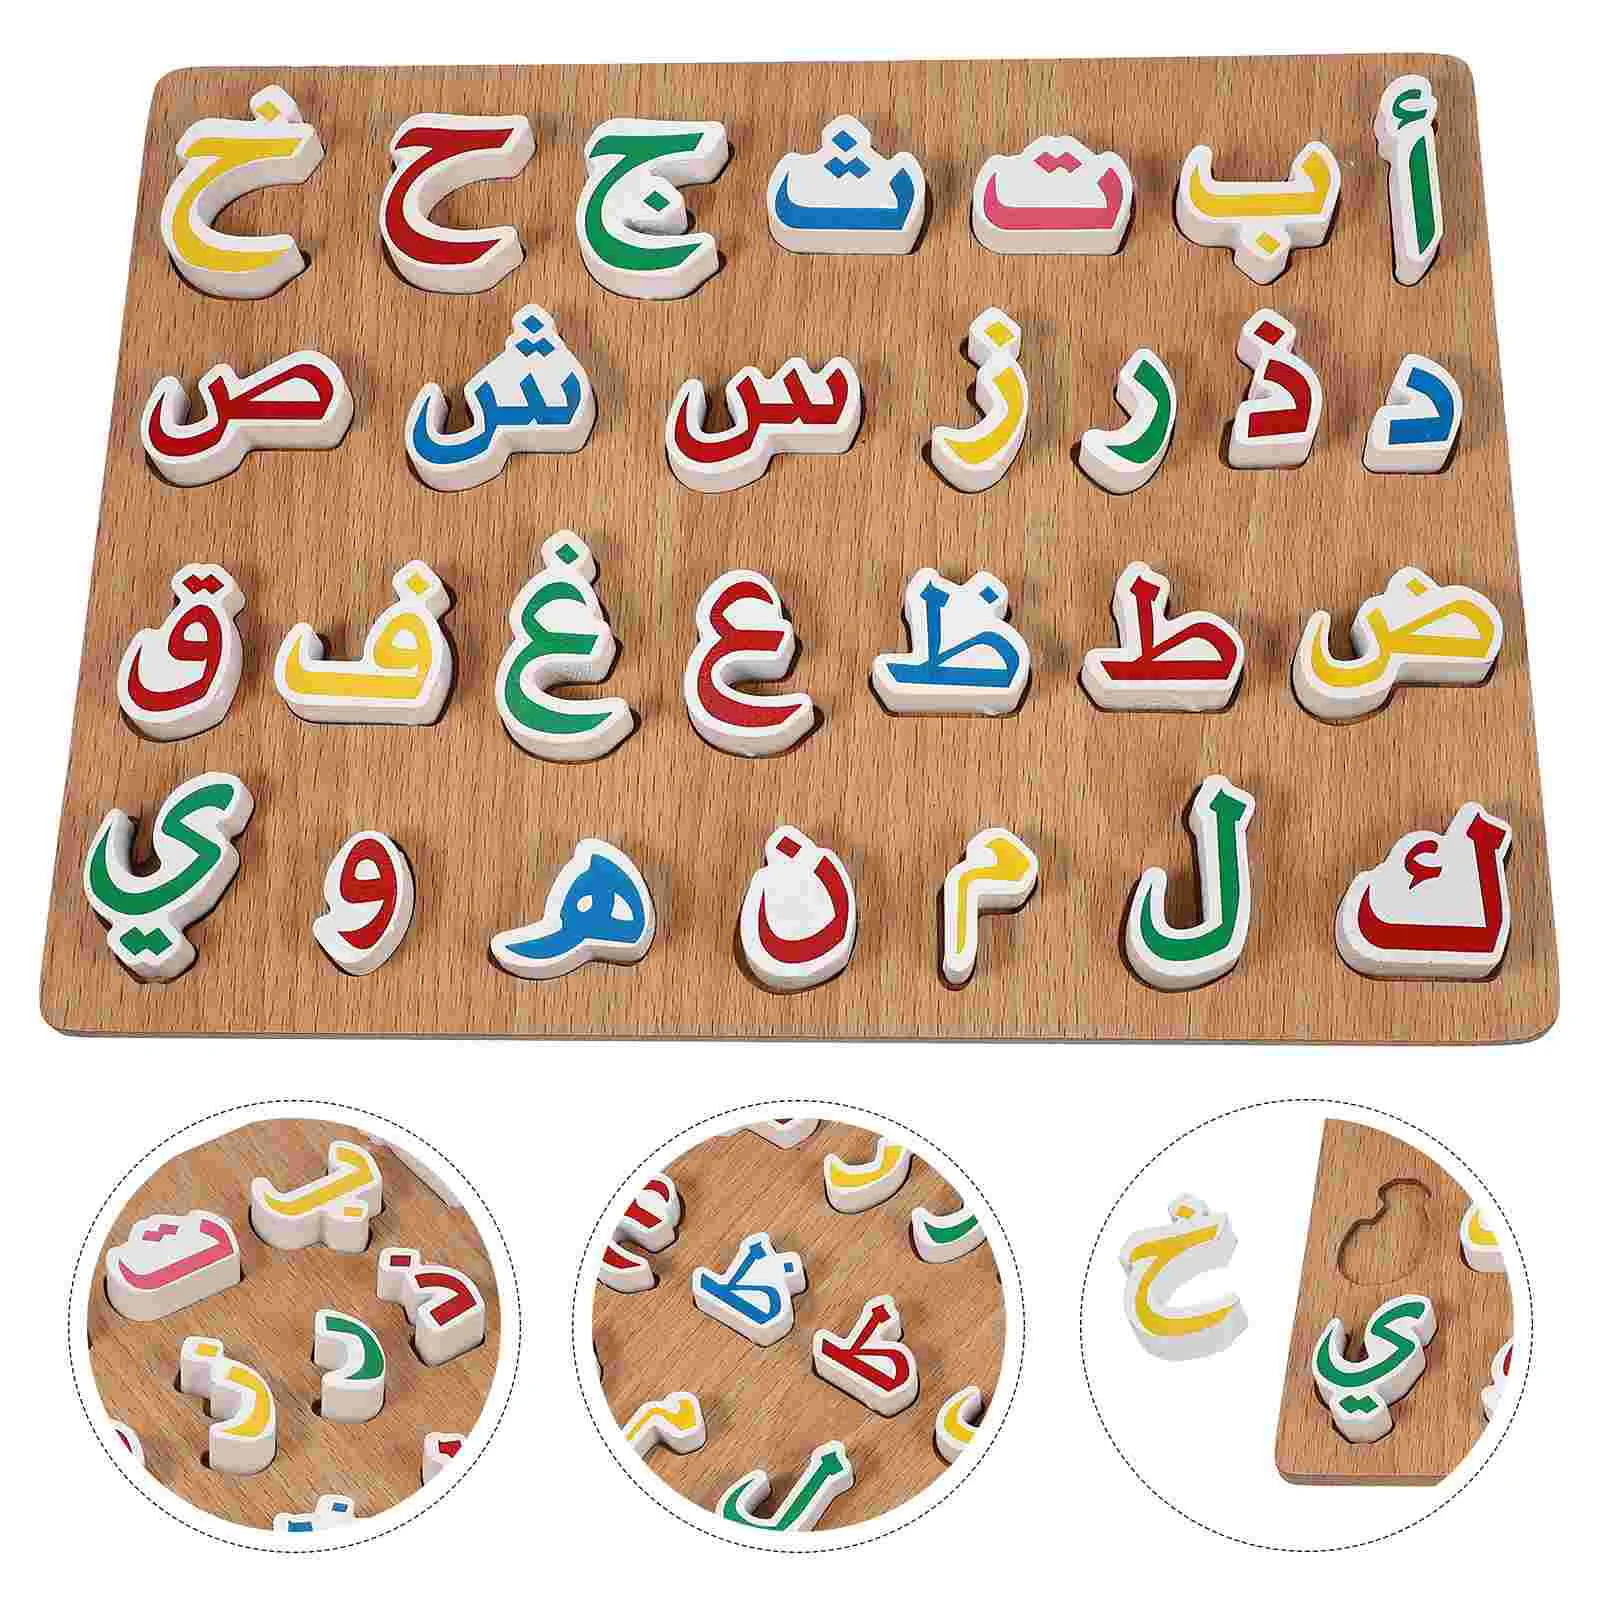 

Пазл, арабские игрушки, подходящая игрушка, алфавит, детская деревянная обучающая доска с буквами, деревянная игрушка, Обучающие блоки со стержнями